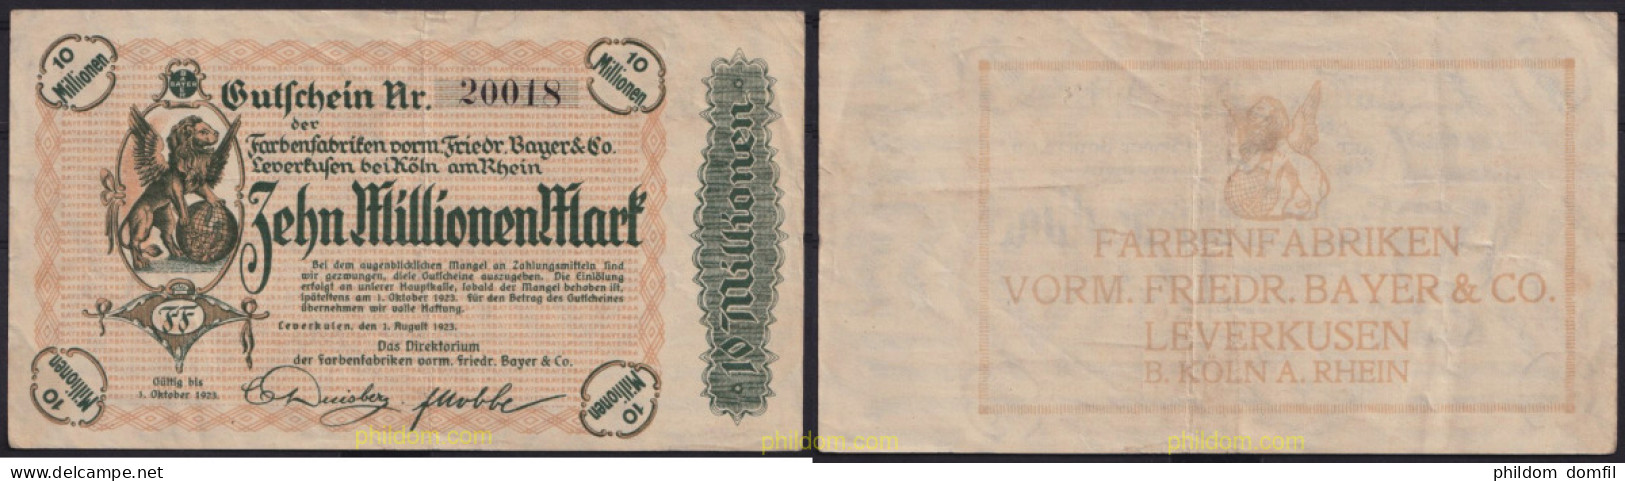 3671 ALEMANIA 1923 GERMANY 10000000 MARK 1923 LEVERKUSEN FARBENFABRIKEN VORM FRIEDR. BAYER & CO - Reichsschuldenverwaltung